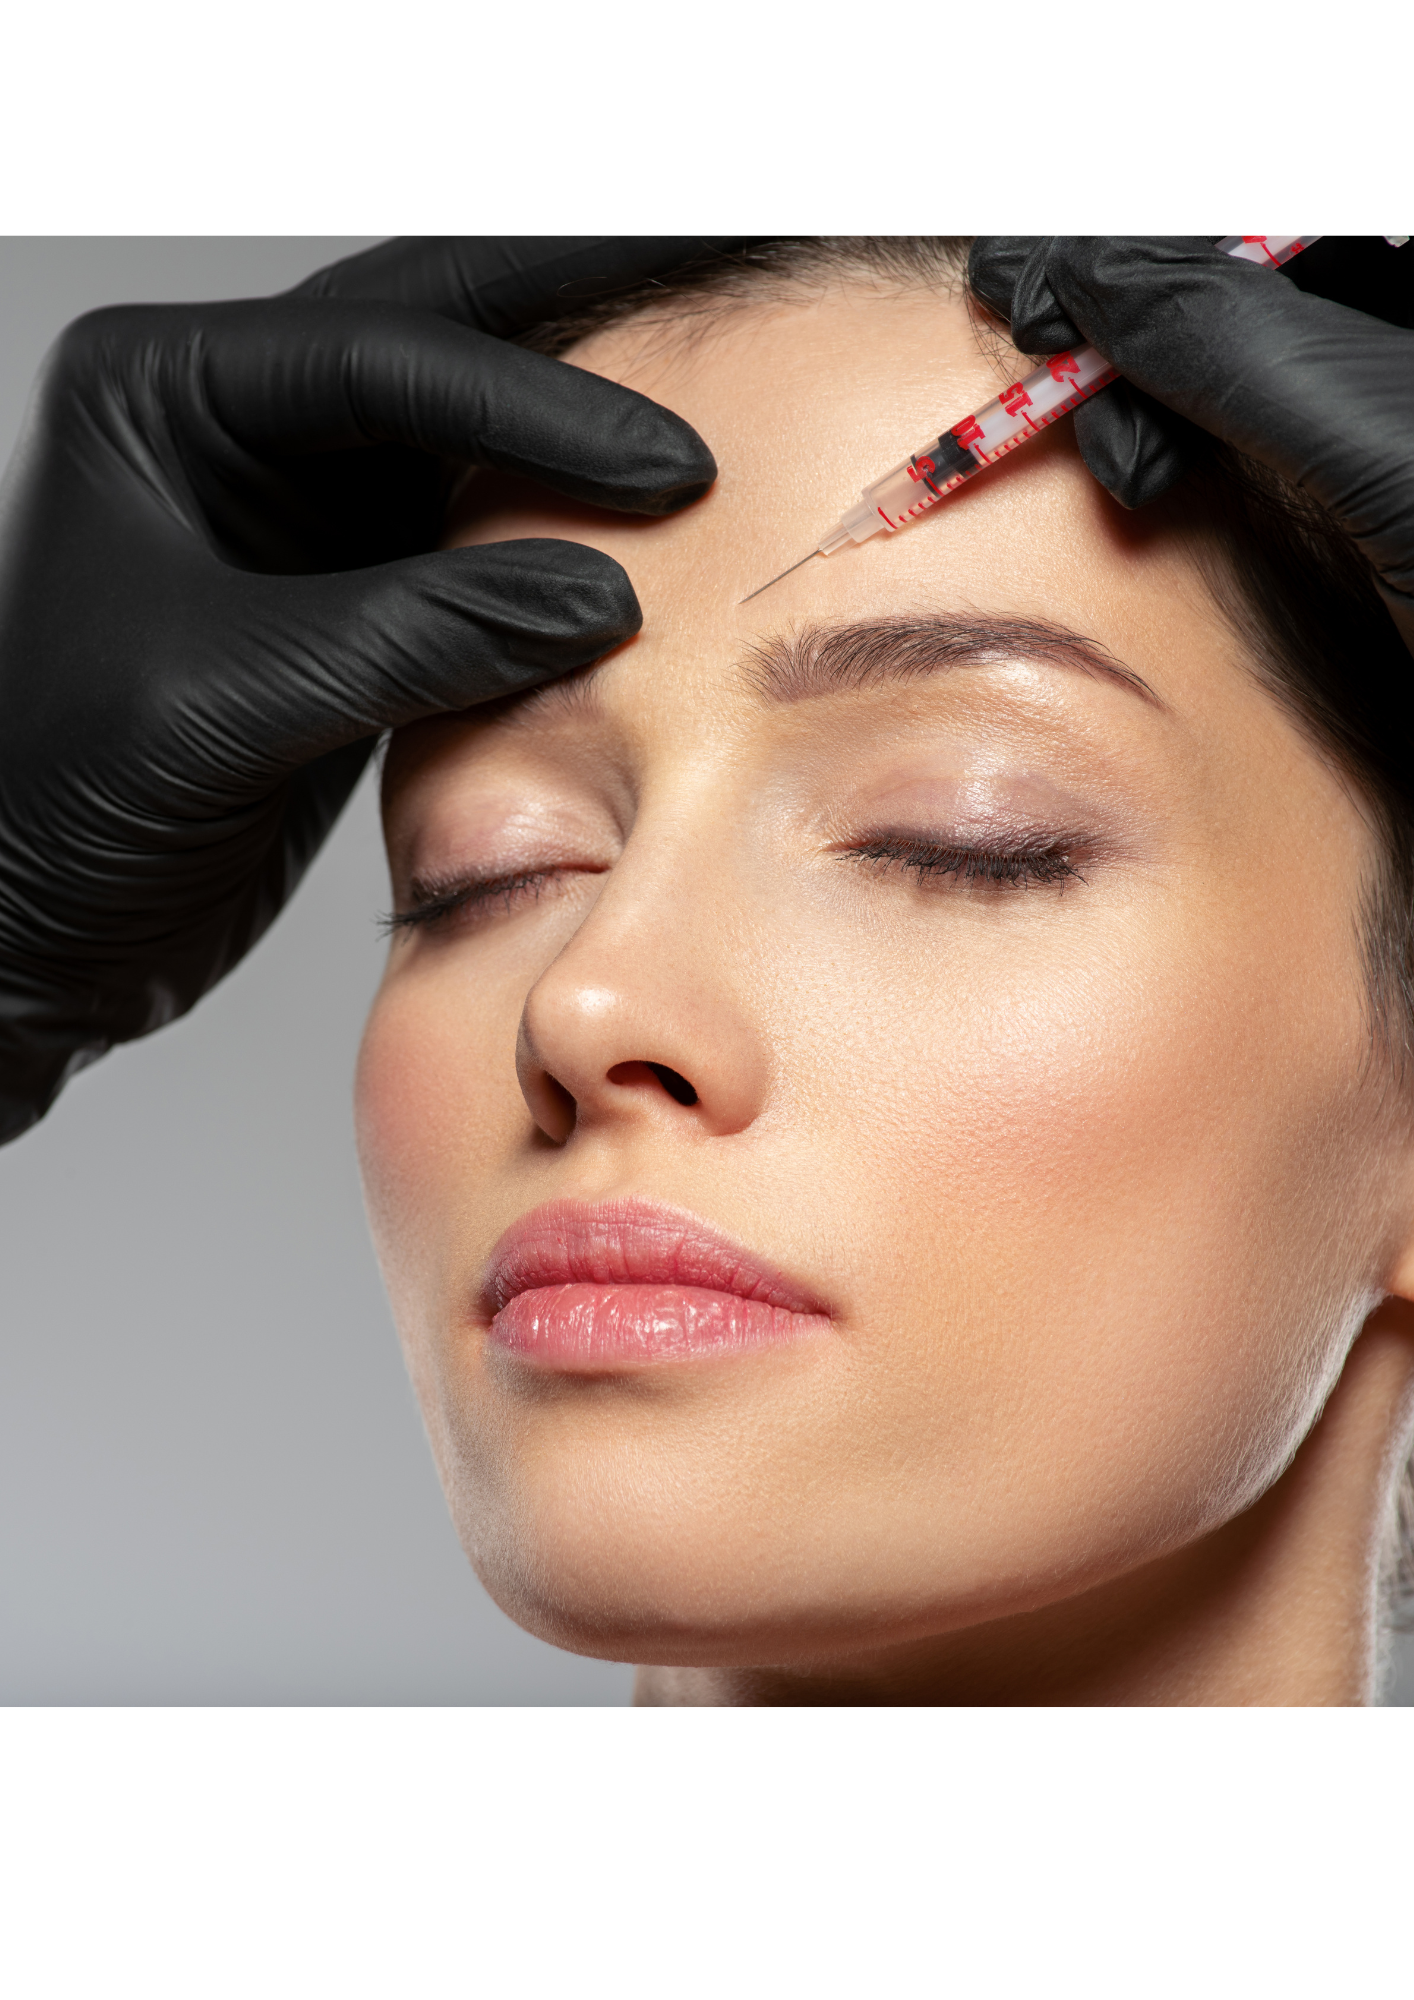 Aplicação de botox no rosto de uma mulher